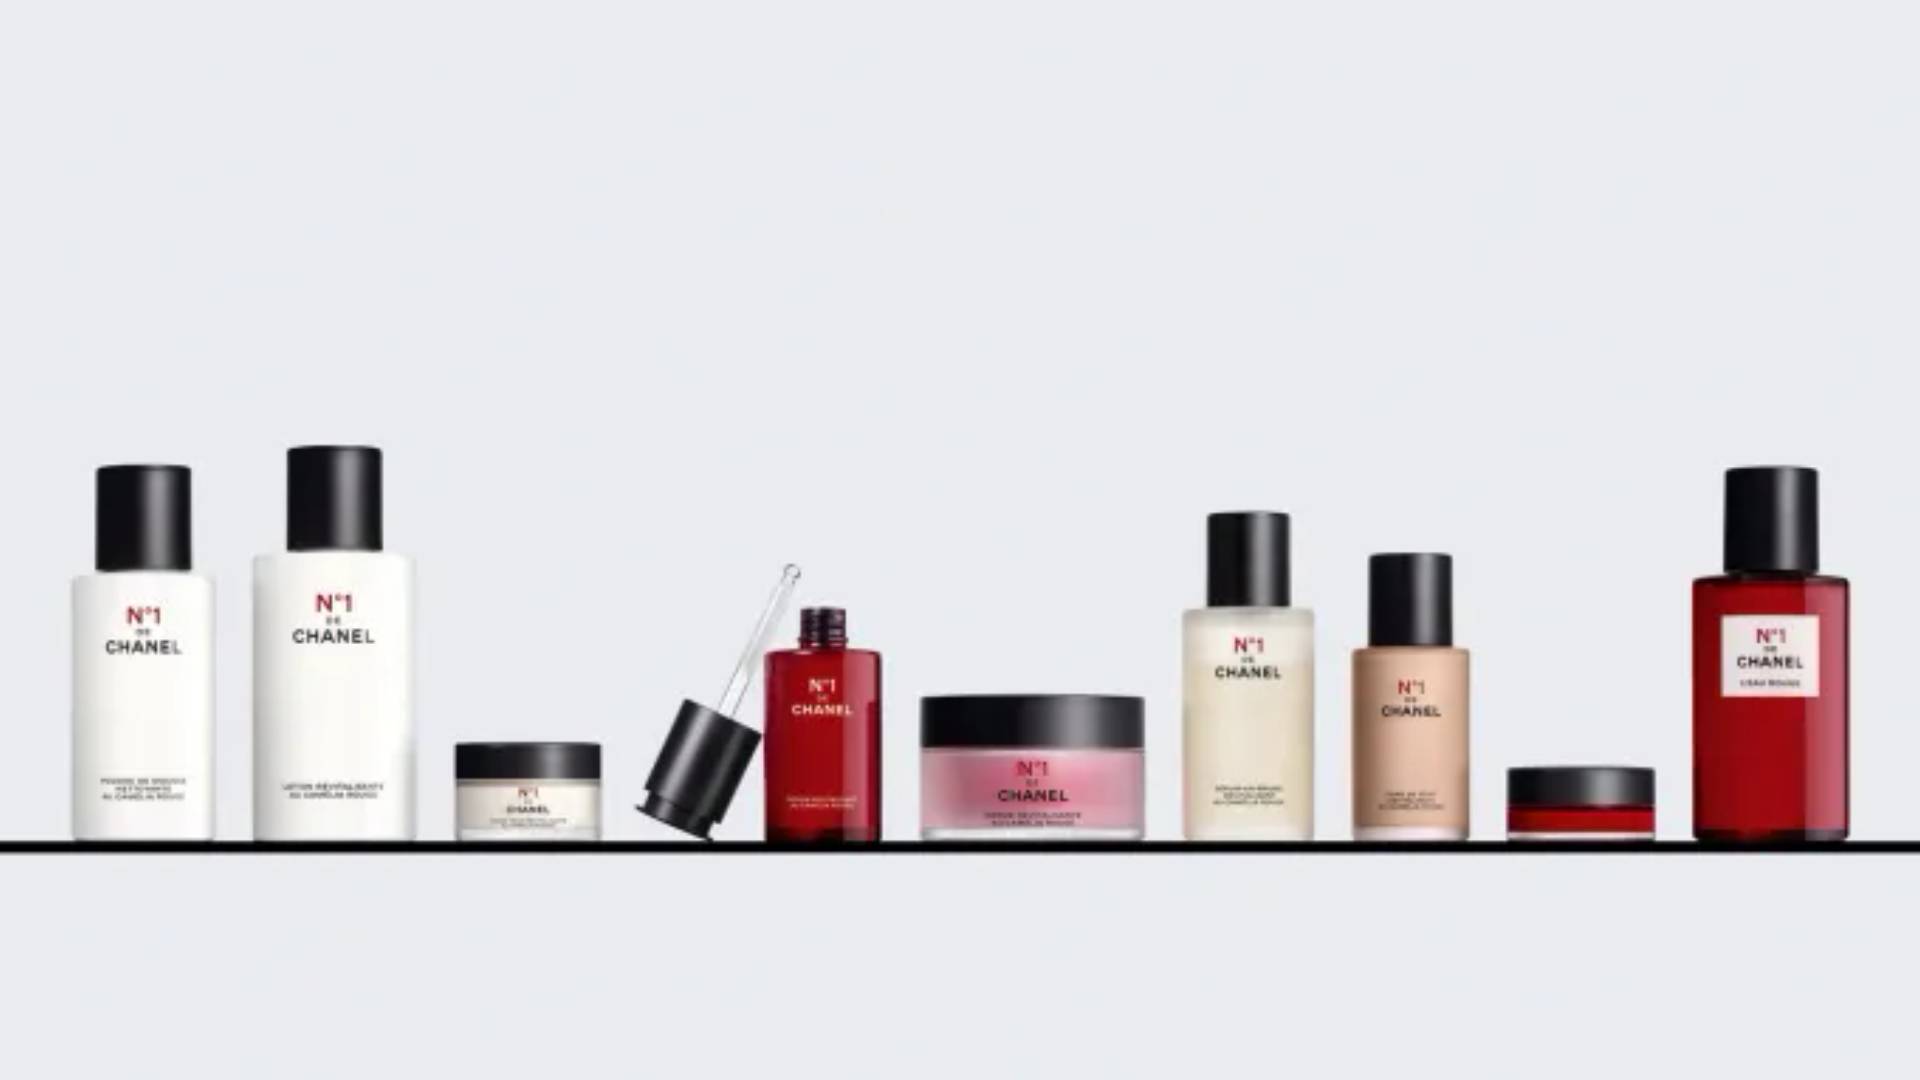 Chanel initiates beauty industry traceability efforts